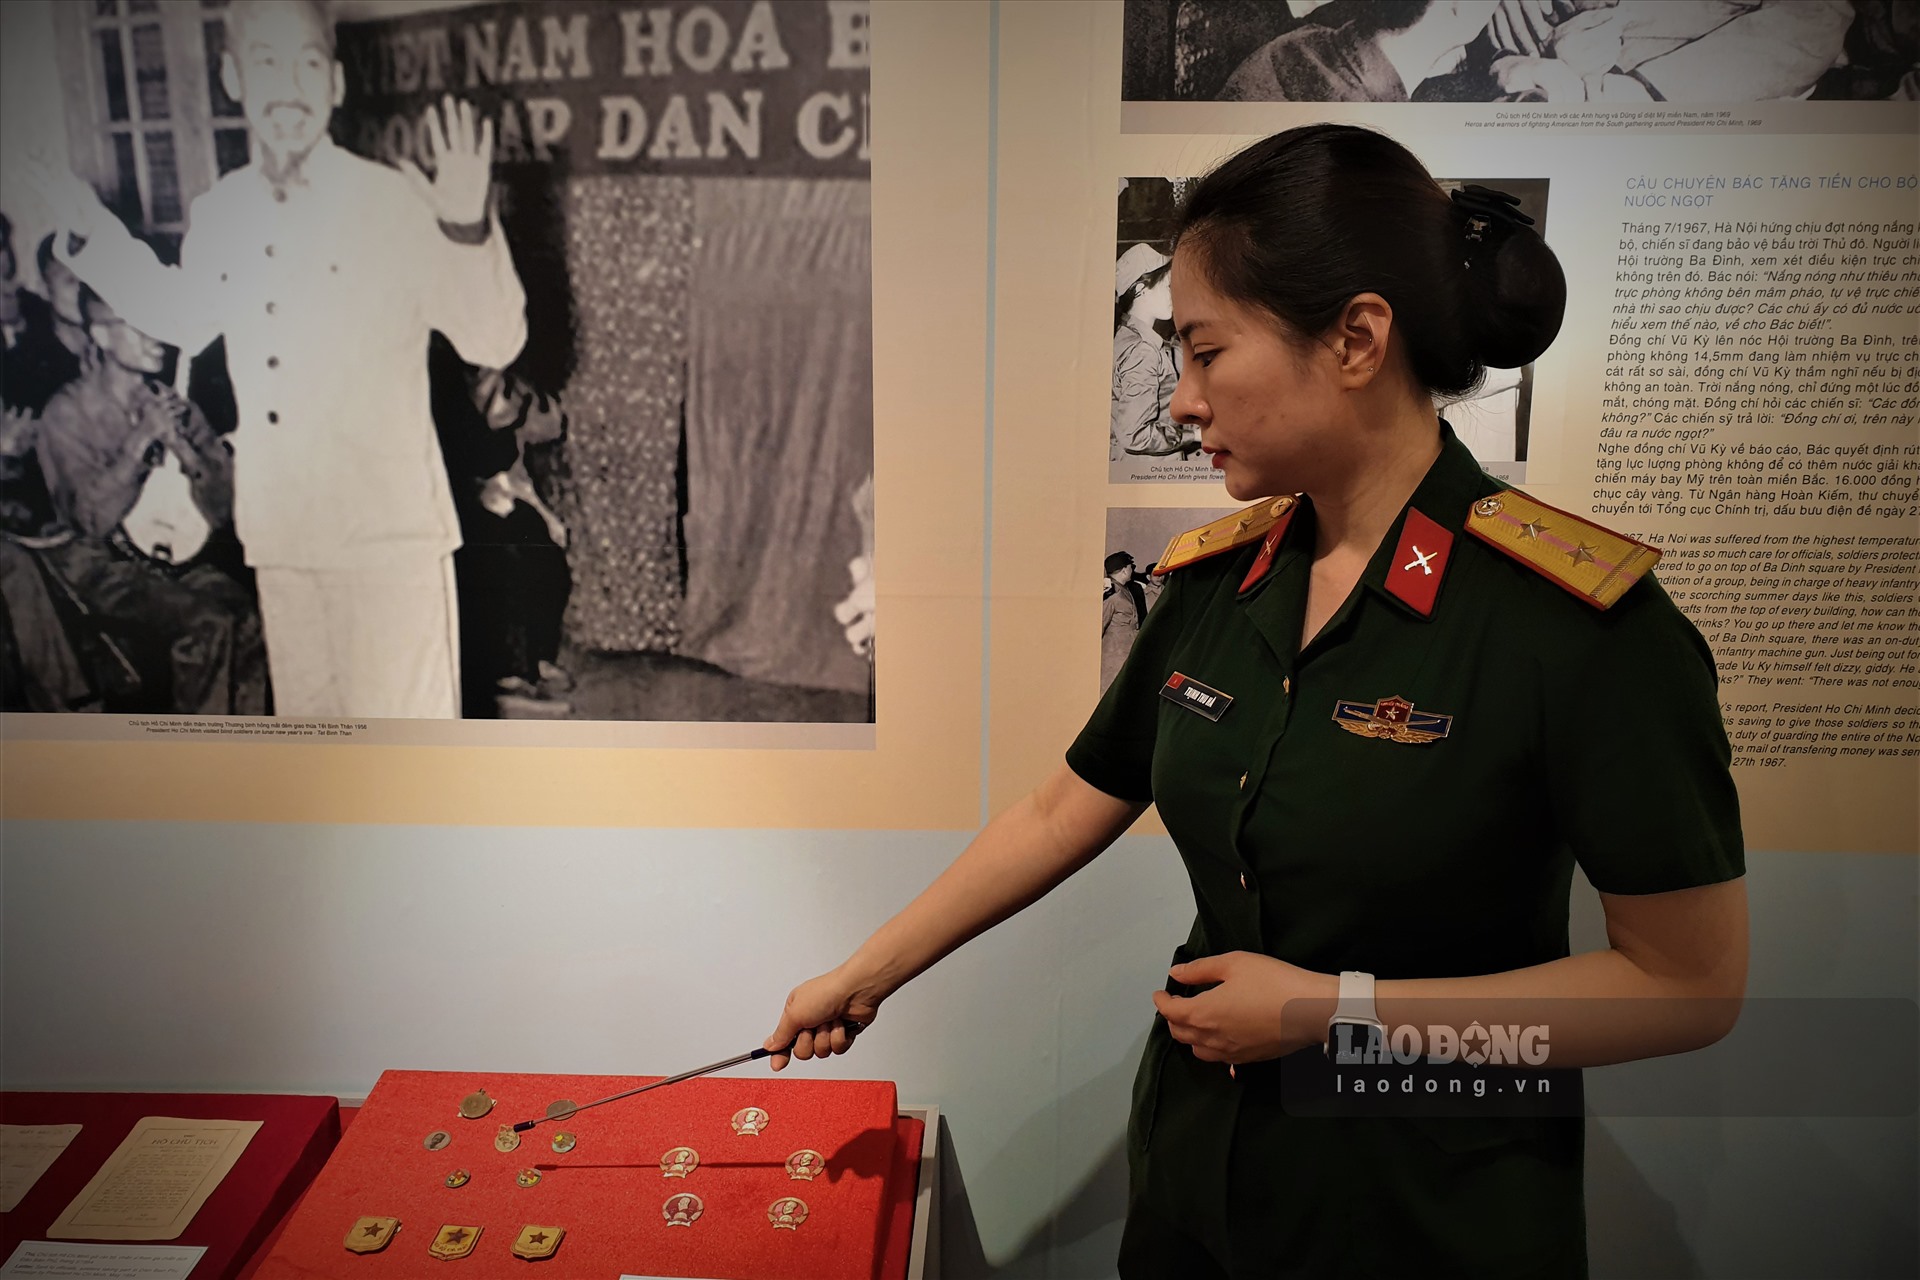 Đặc biệt, bộ sưu tập huân huy chương mà Chủ tịch Hồ Chí Minh đã dành tặng cho những tập thể, cá nhân có thành tích tiêu biểu trong các cuộc kháng chiến cũng được trưng bày tại buổi triển lãm.